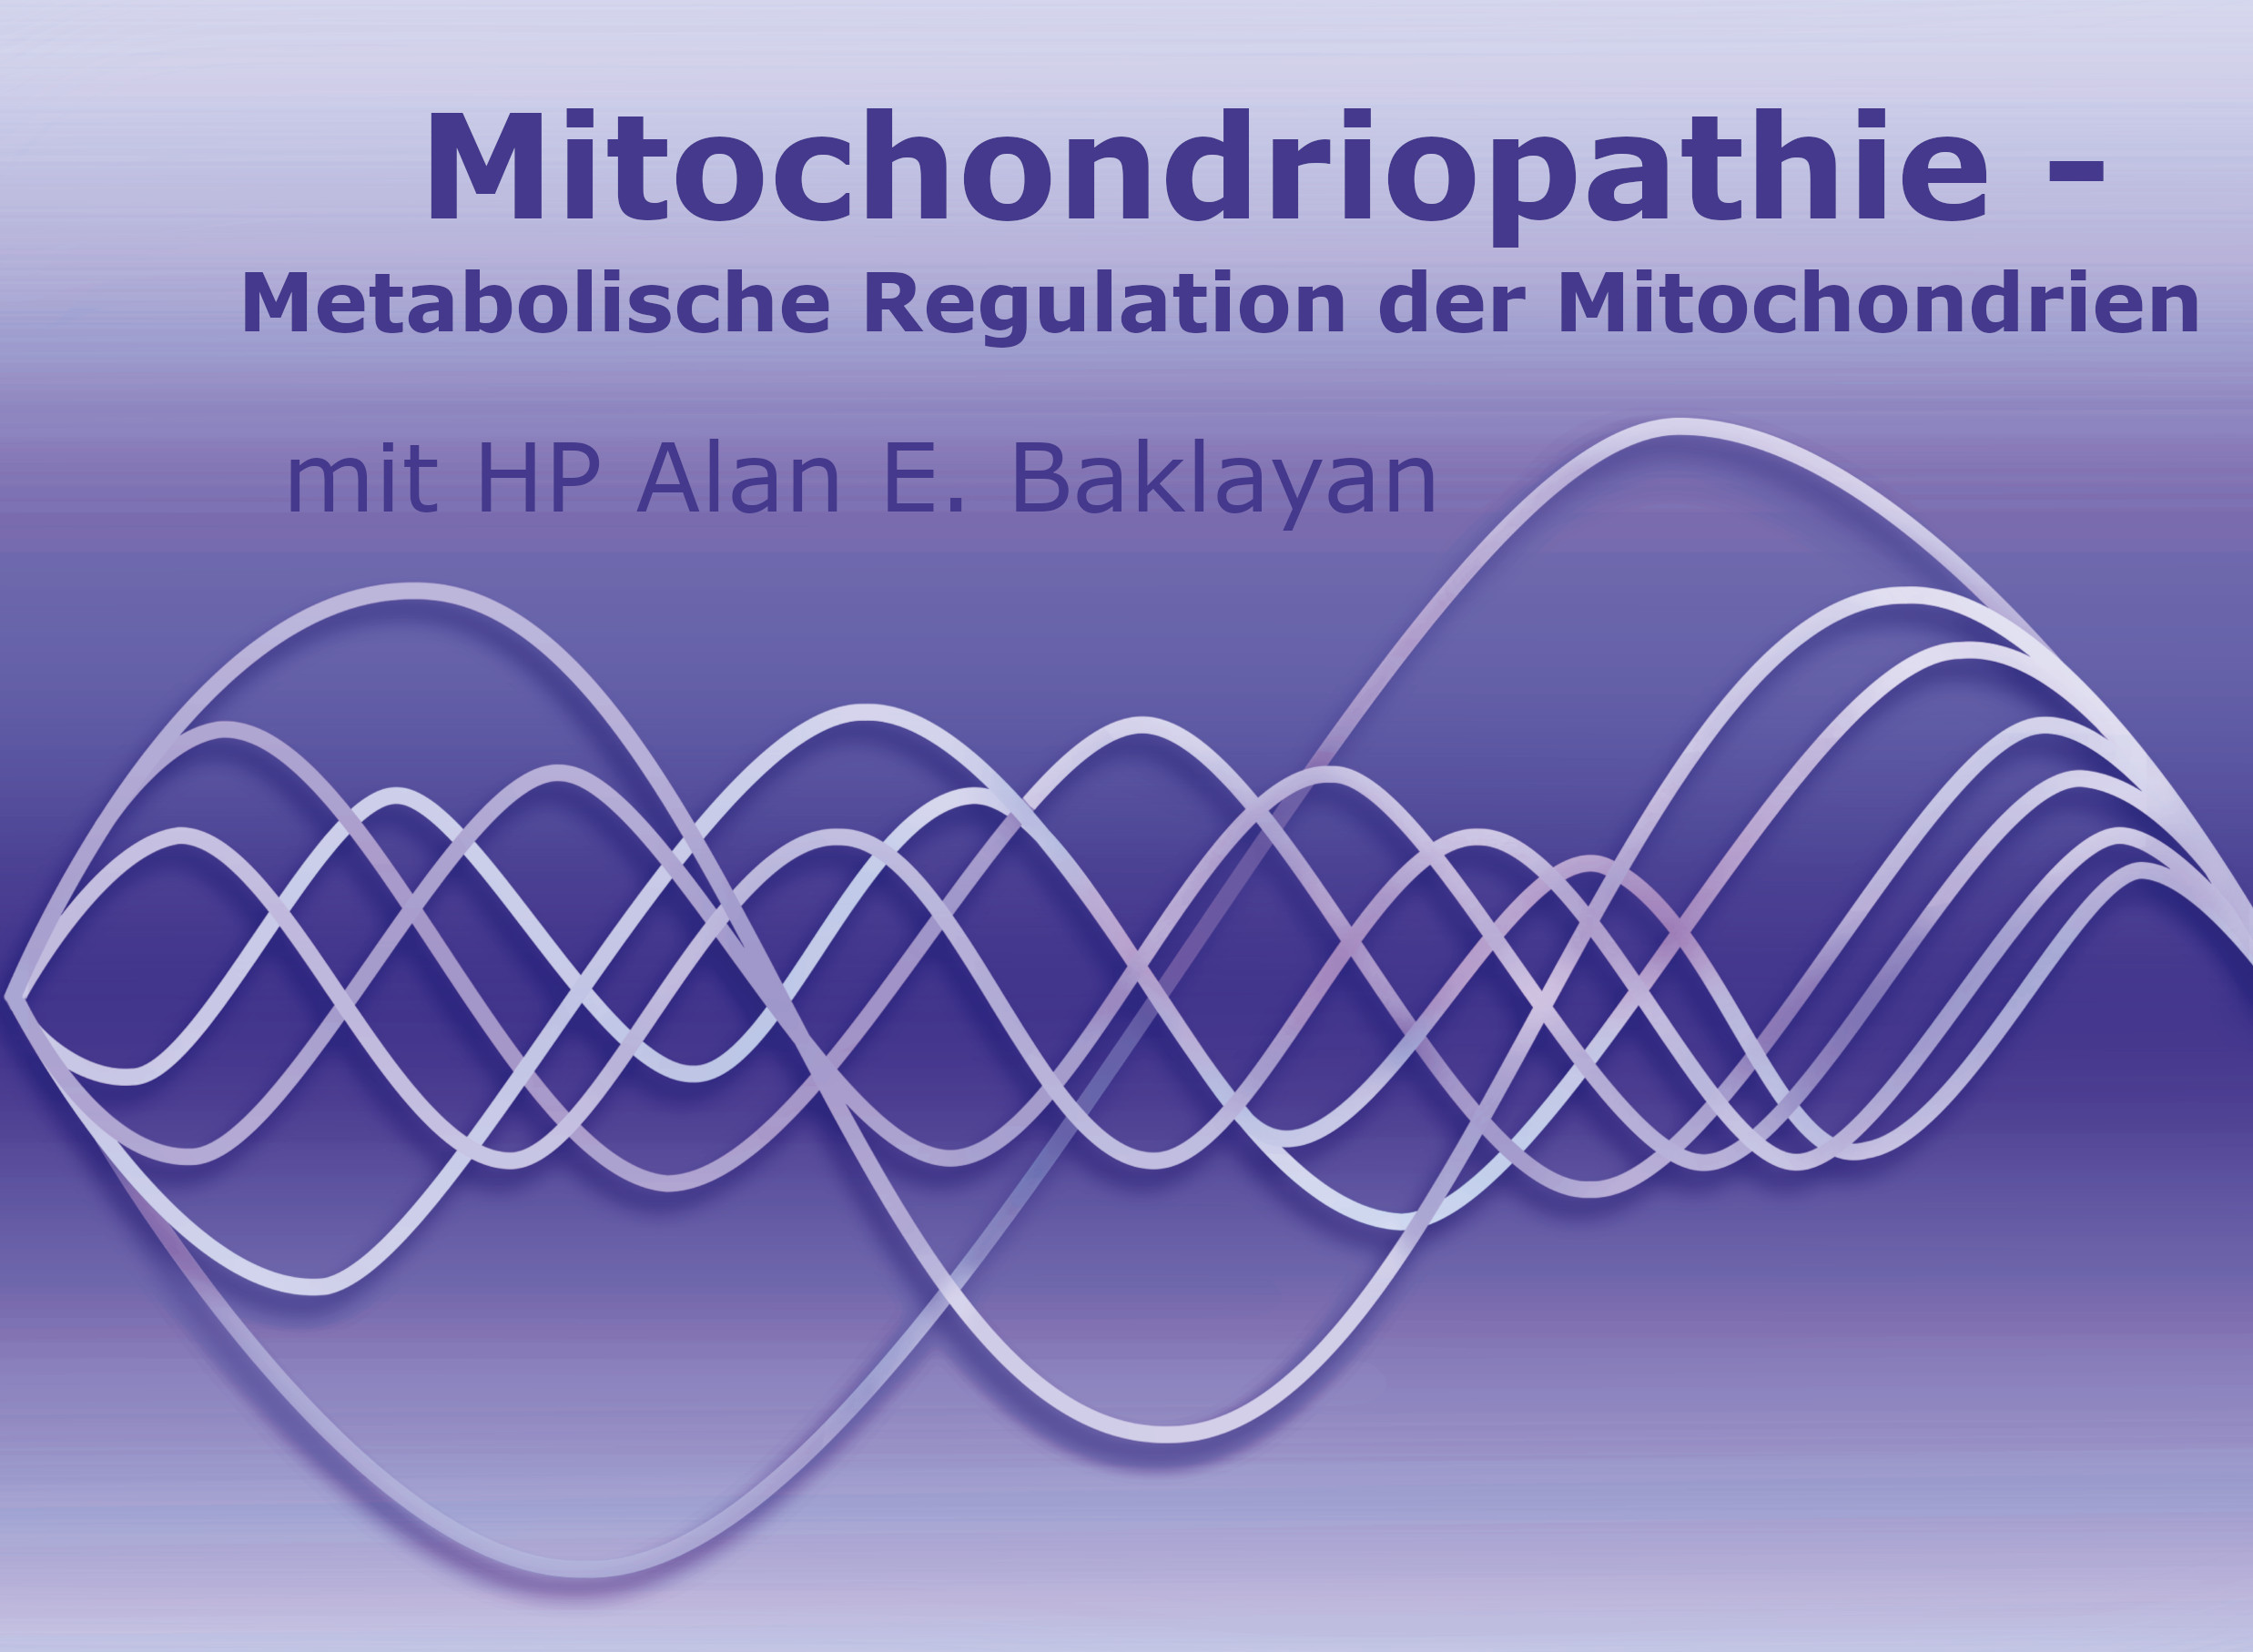 Mitochondriopathie – Metabolische Regulation der Mitochondrien